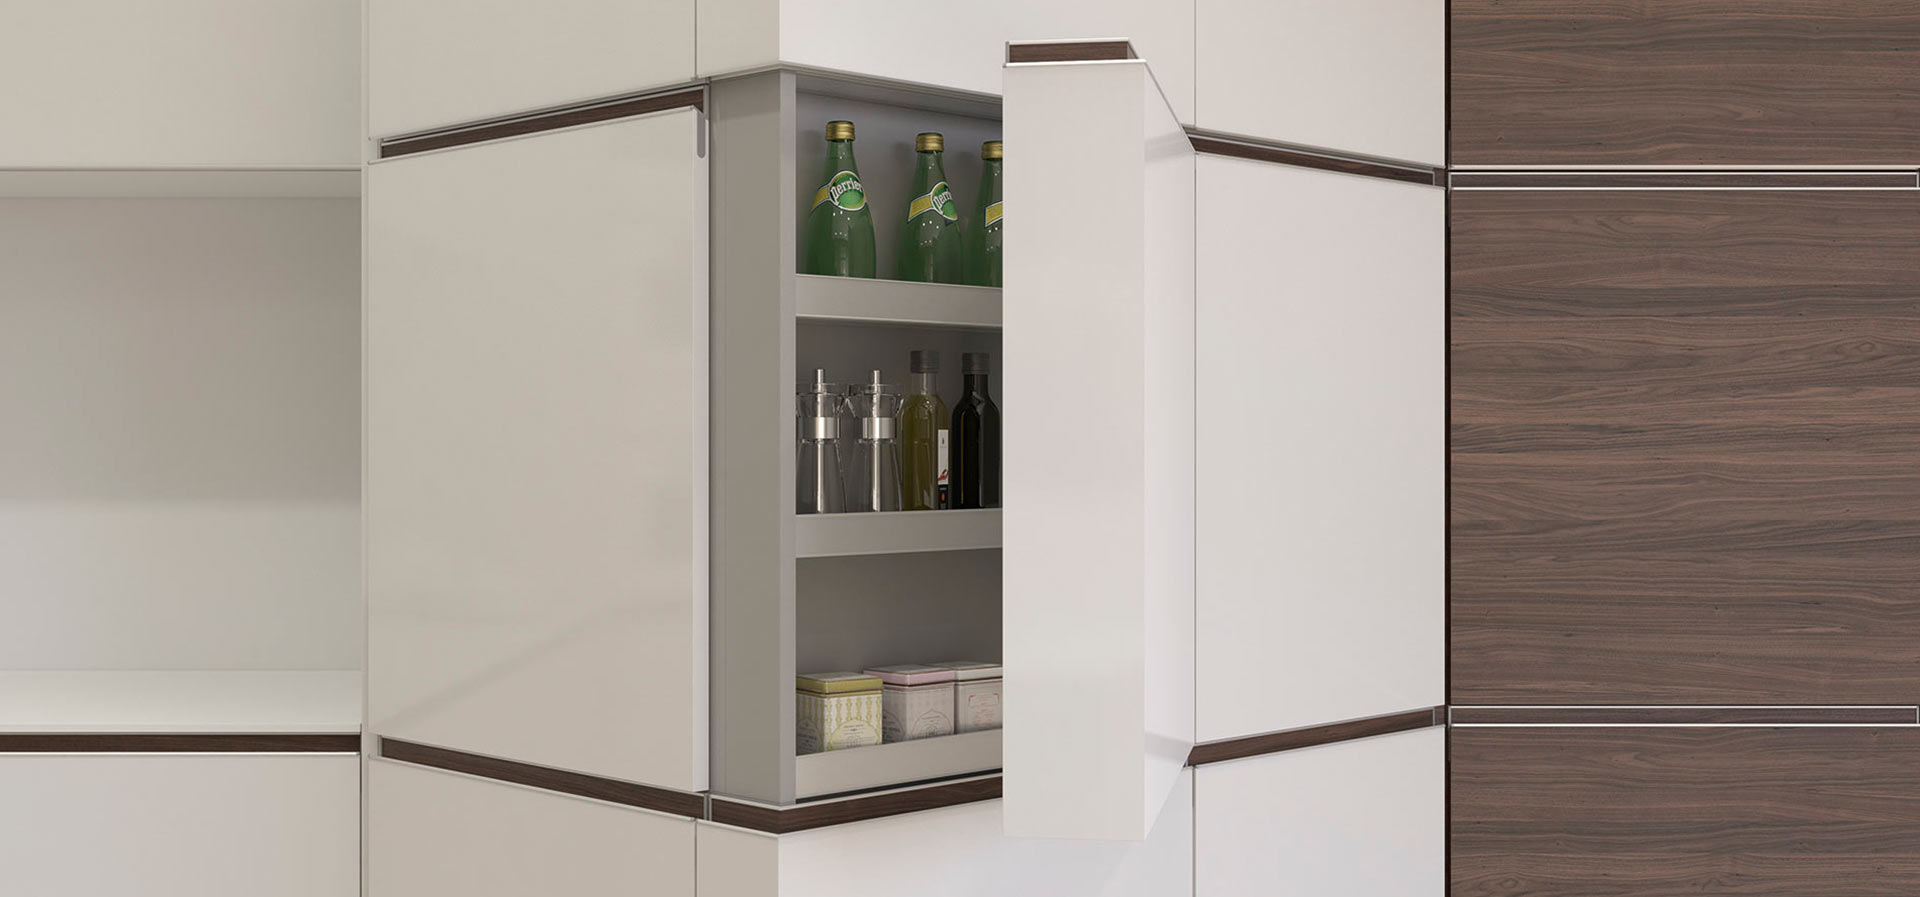 Mueble blanco de diseño para la cocina geometría con puerta abierta dejando observar botellas de vidrio y pequeñas cajas en su interior